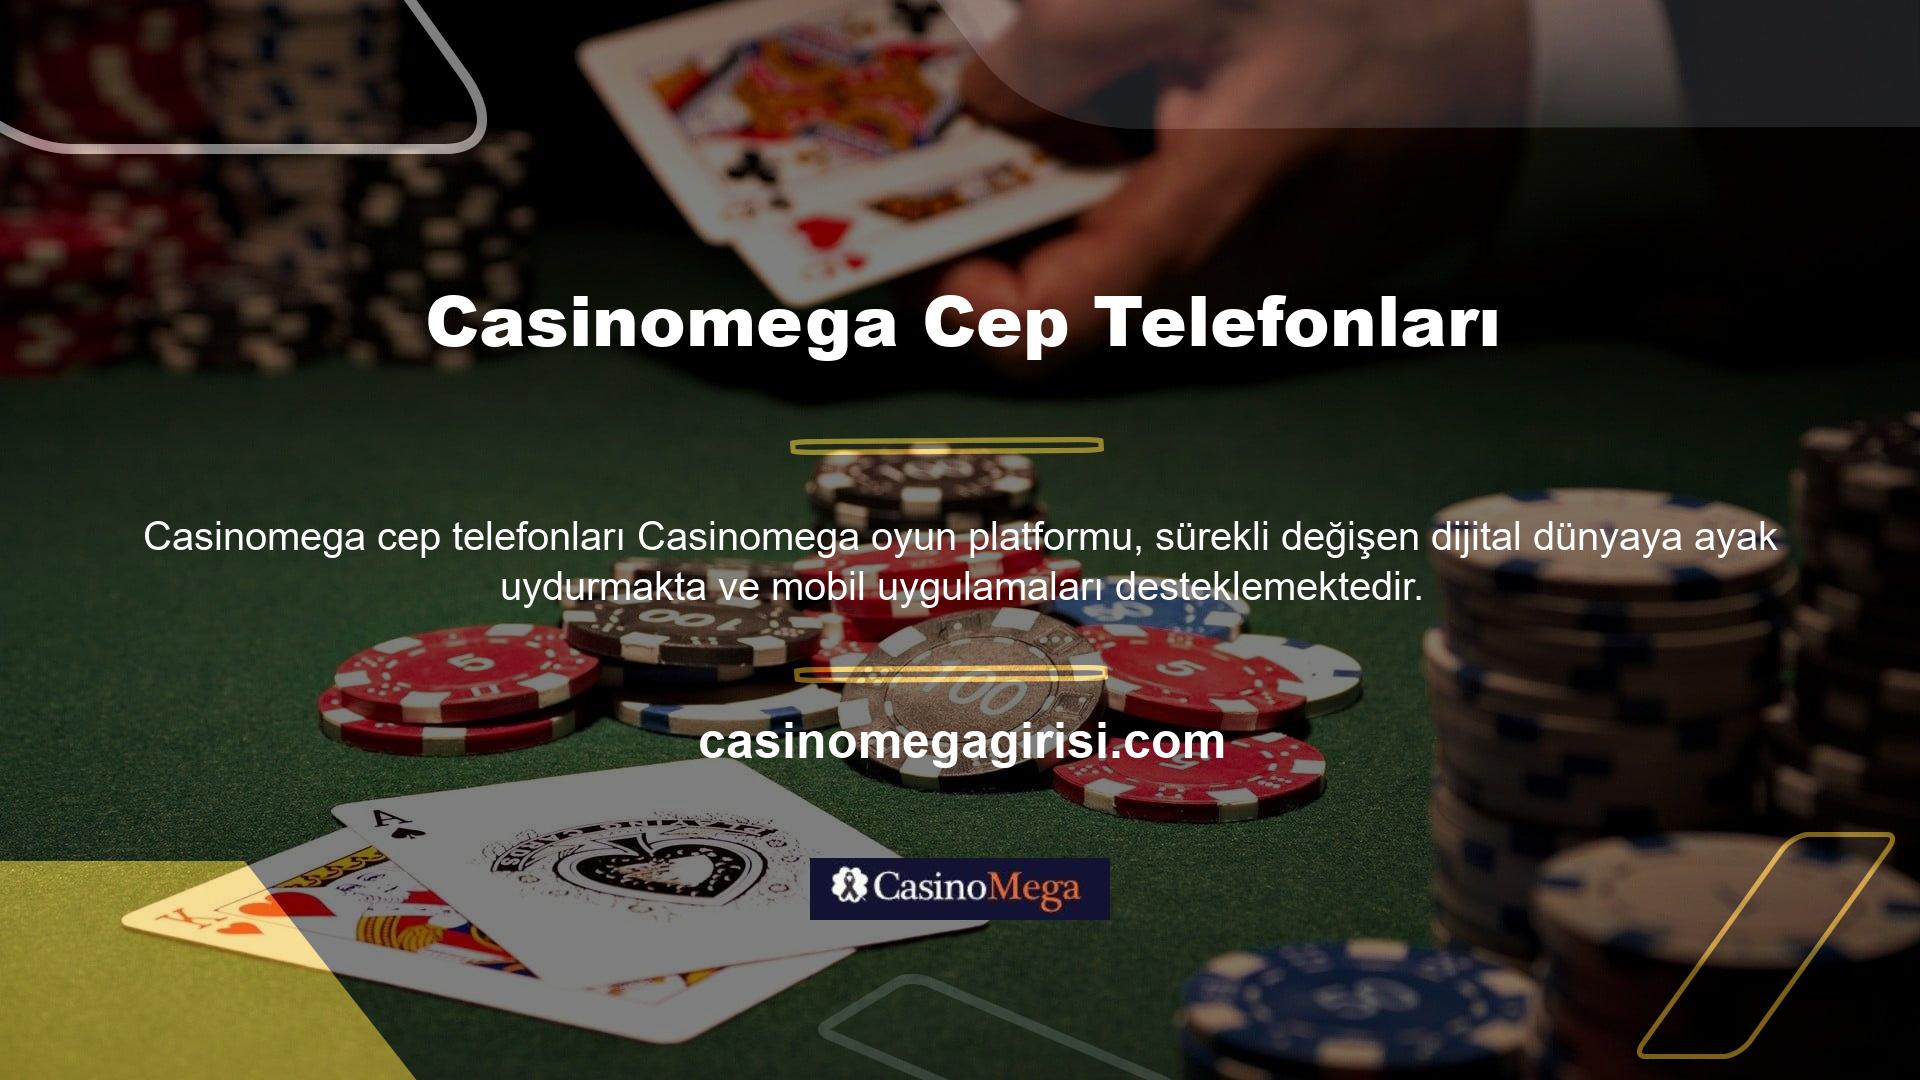 Casinomega platformu da bir mobil uygulamaya taşındı